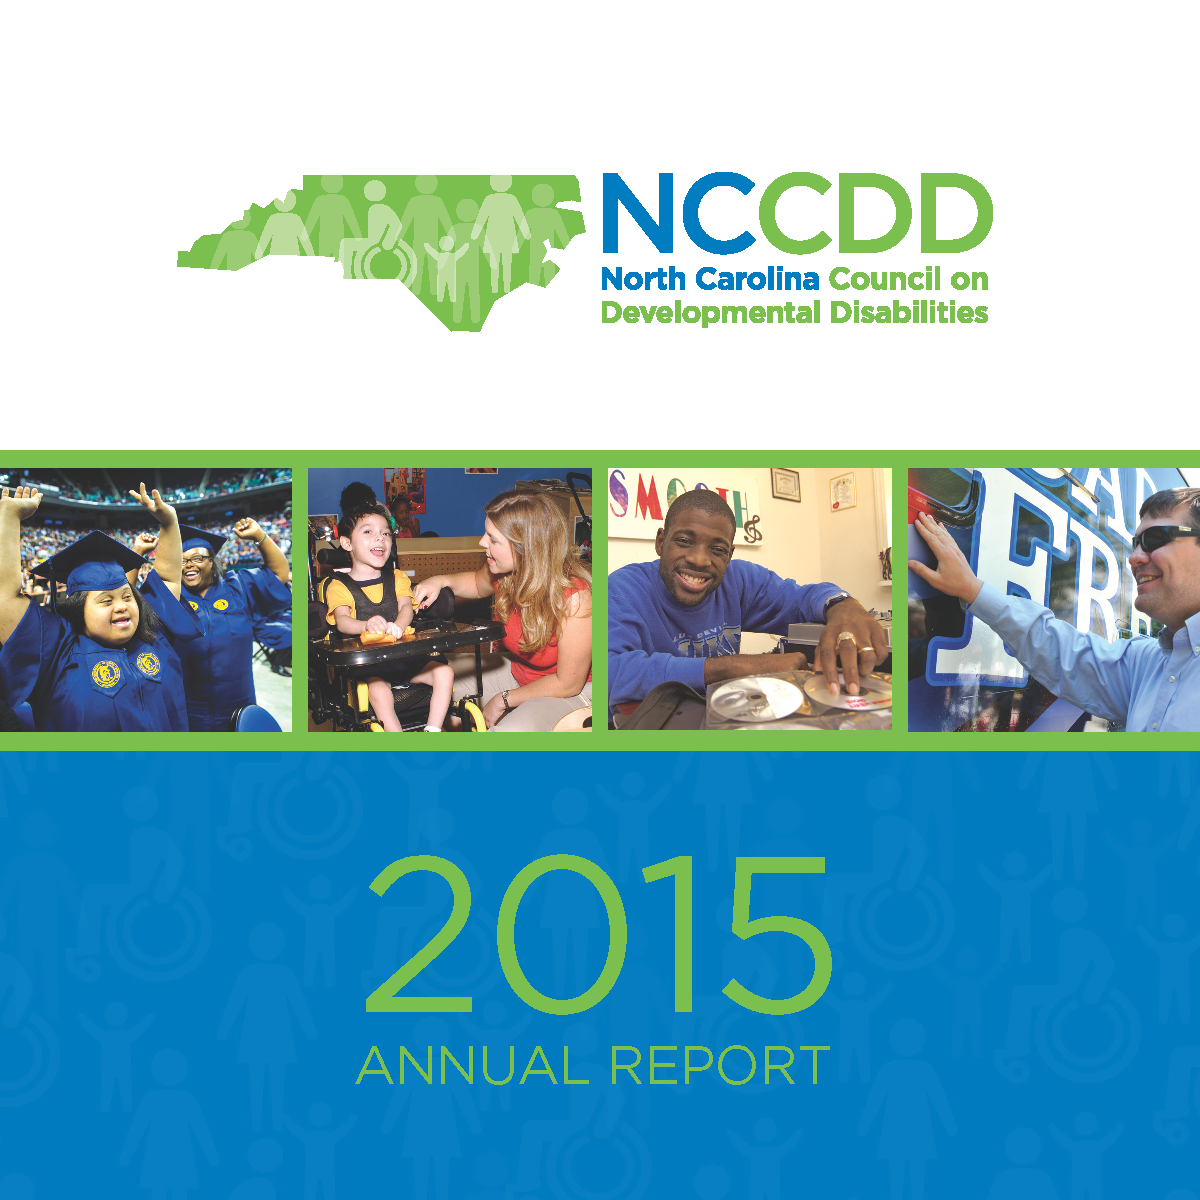 NCCDD AnnualReport Cover 2018 English